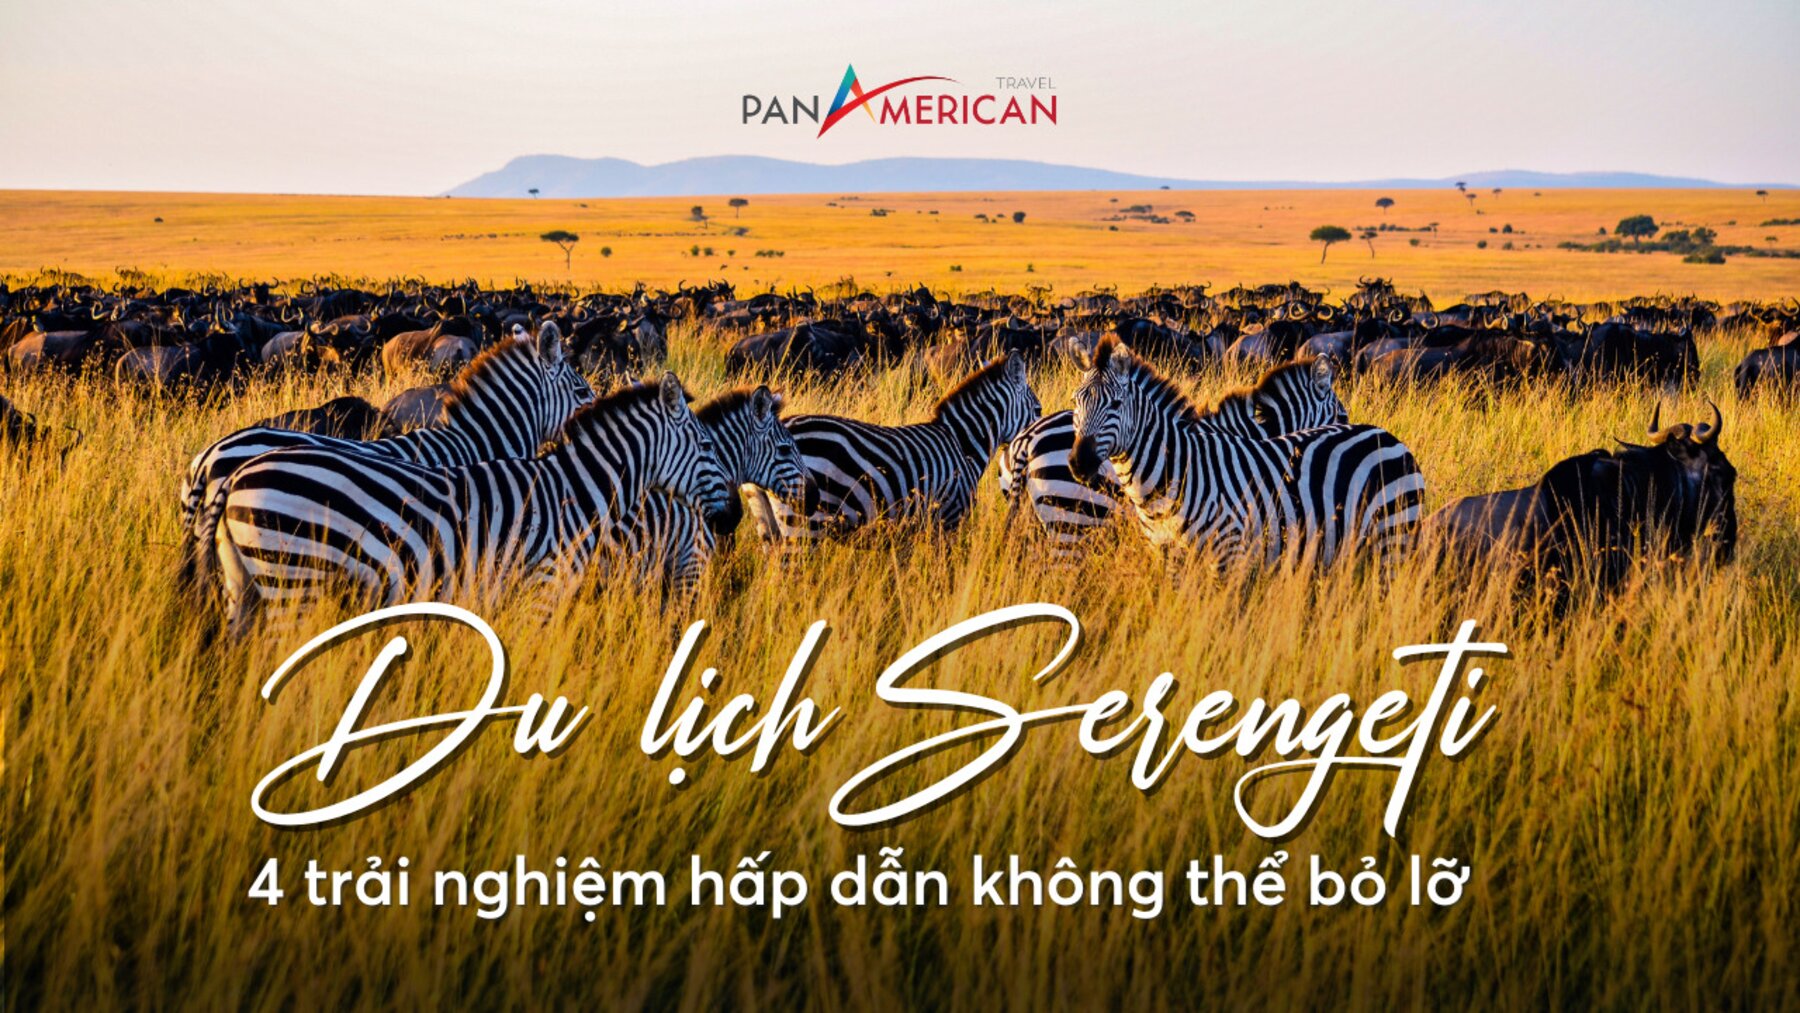 Du lịch Serengeti: 4 trải nghiệm hấp dẫn không thể bỏ lỡ tại công viên quốc gia lớn nhất Tanzania